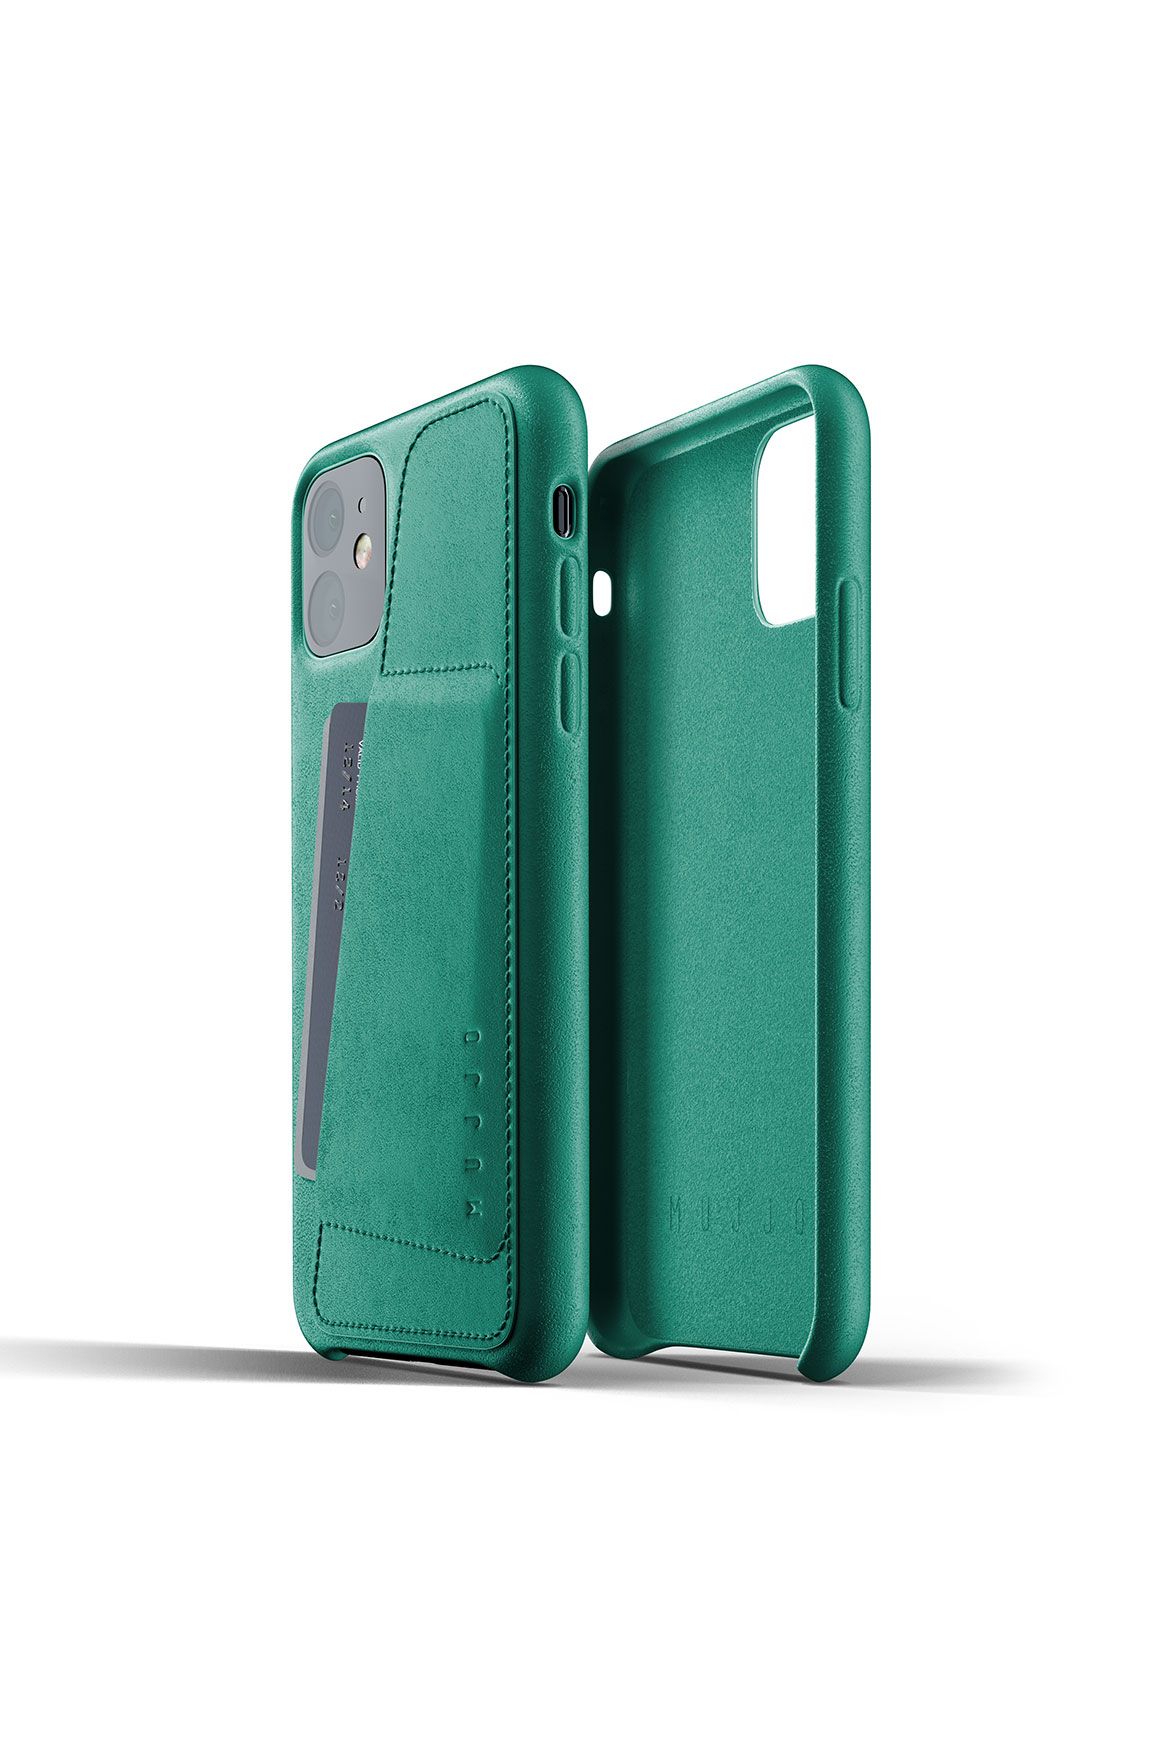 Pouzdro MUJJO Full Leather Wallet Case pro Apple iPhone 11 zelené